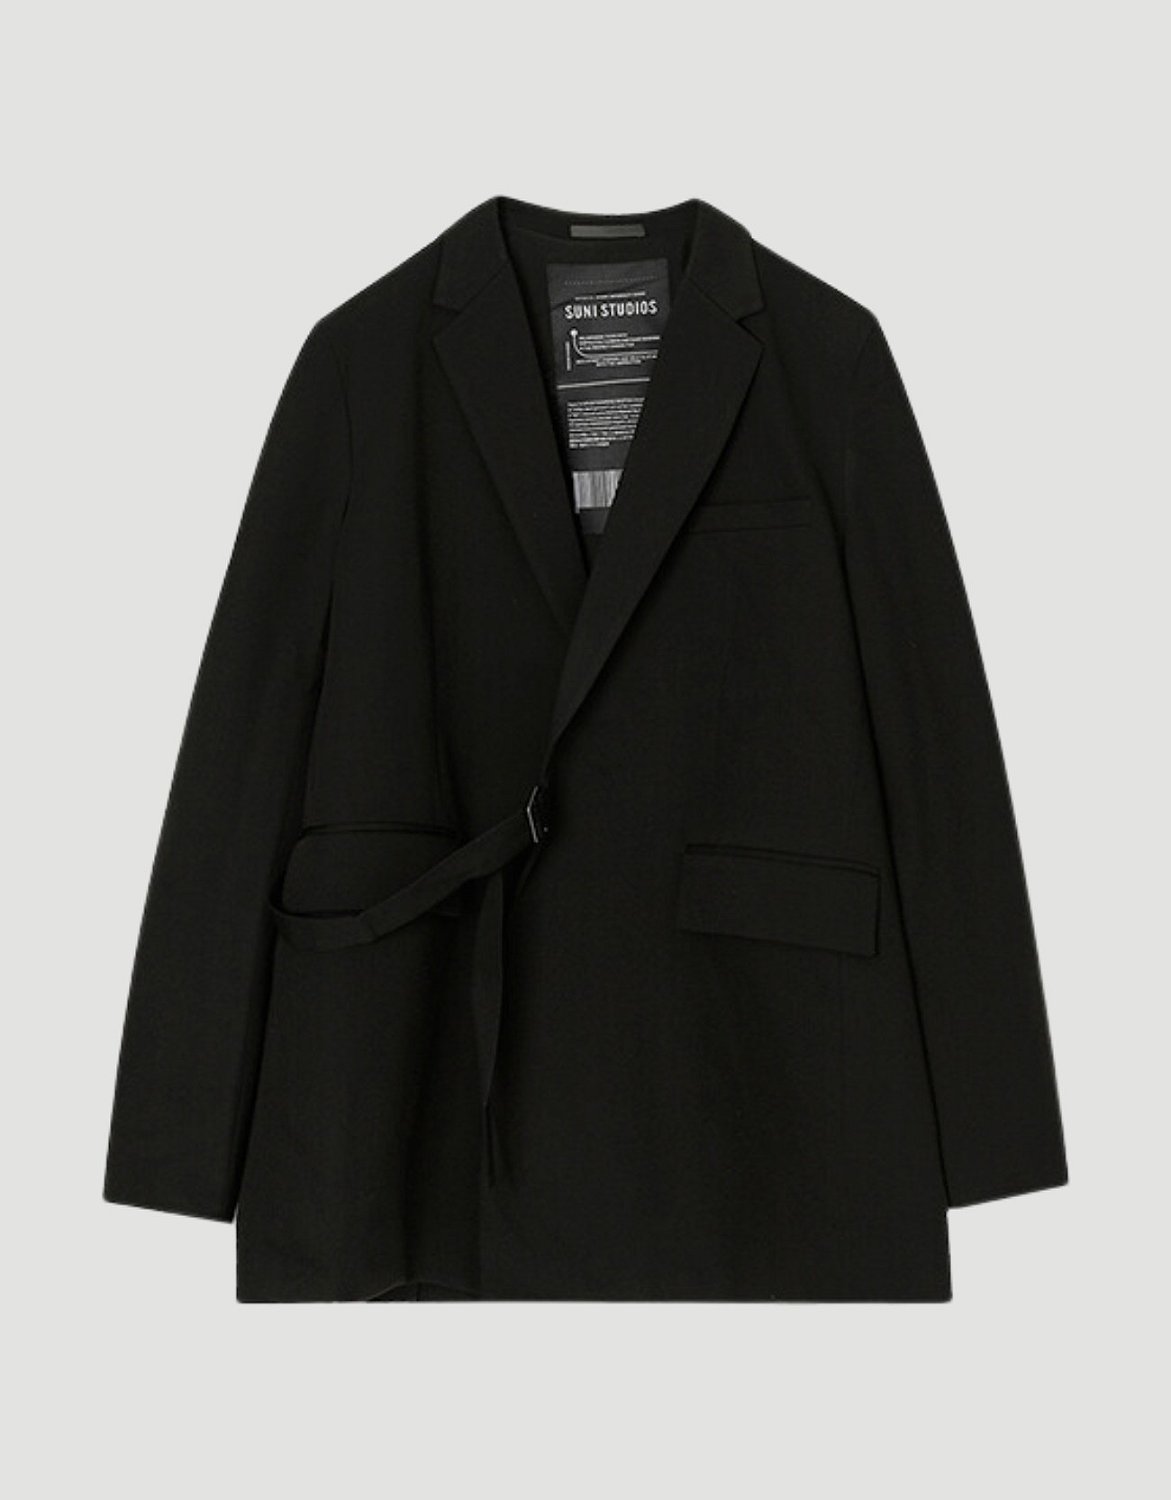 Blazer Kimono Black on Black - NOISER | Street-Fashion Marketplace